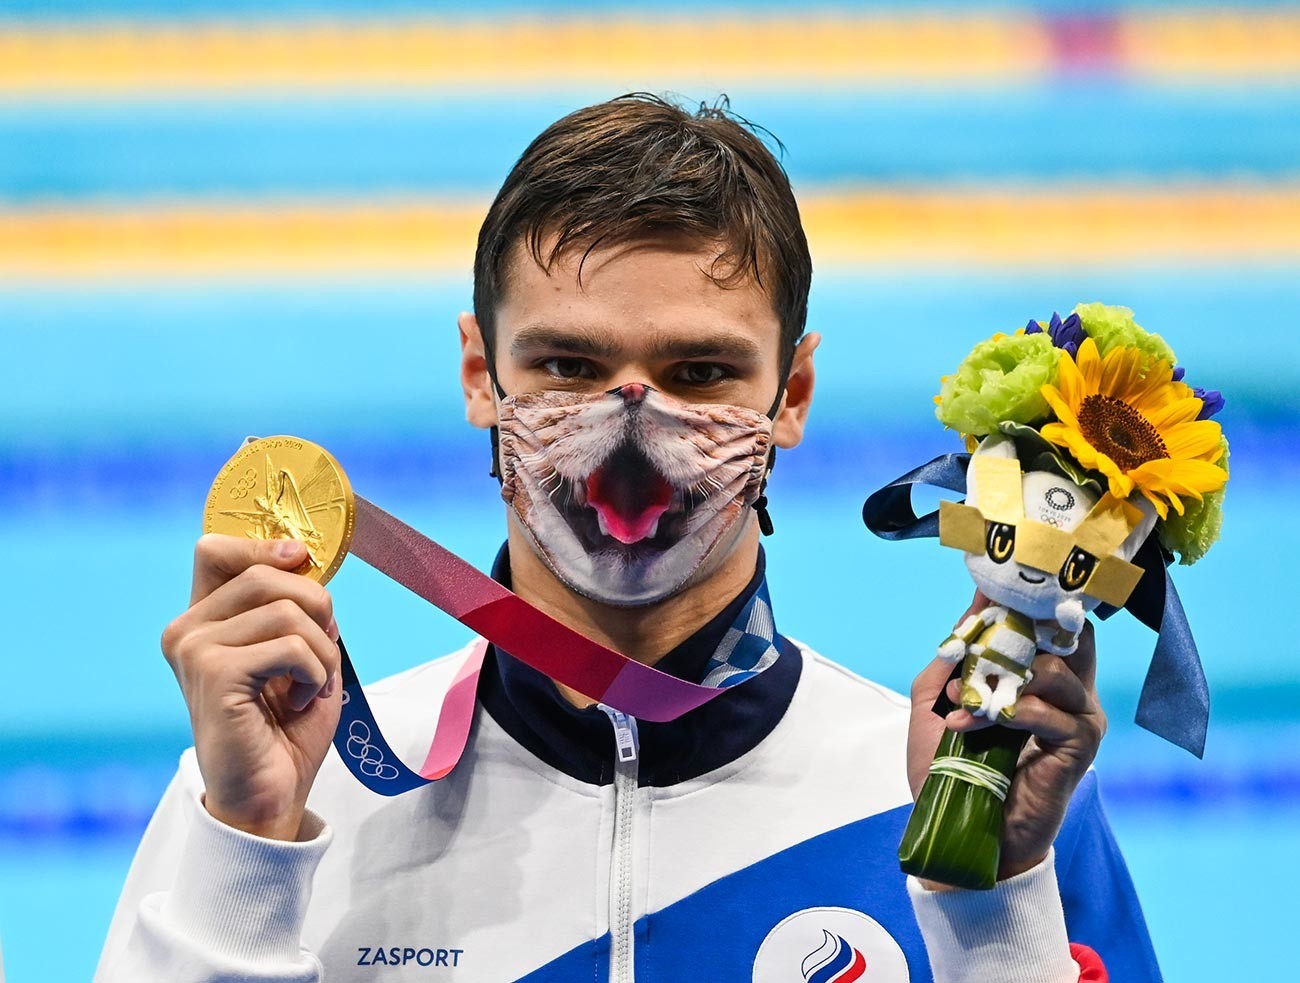 Evgeny Rylov, do Comitê Olímpico Russo, posando com medalha de ouro após final masculina ​​nos 200m costas durante os Jogos Olímpicos de Tóquio, em 30 de julho de 2021

